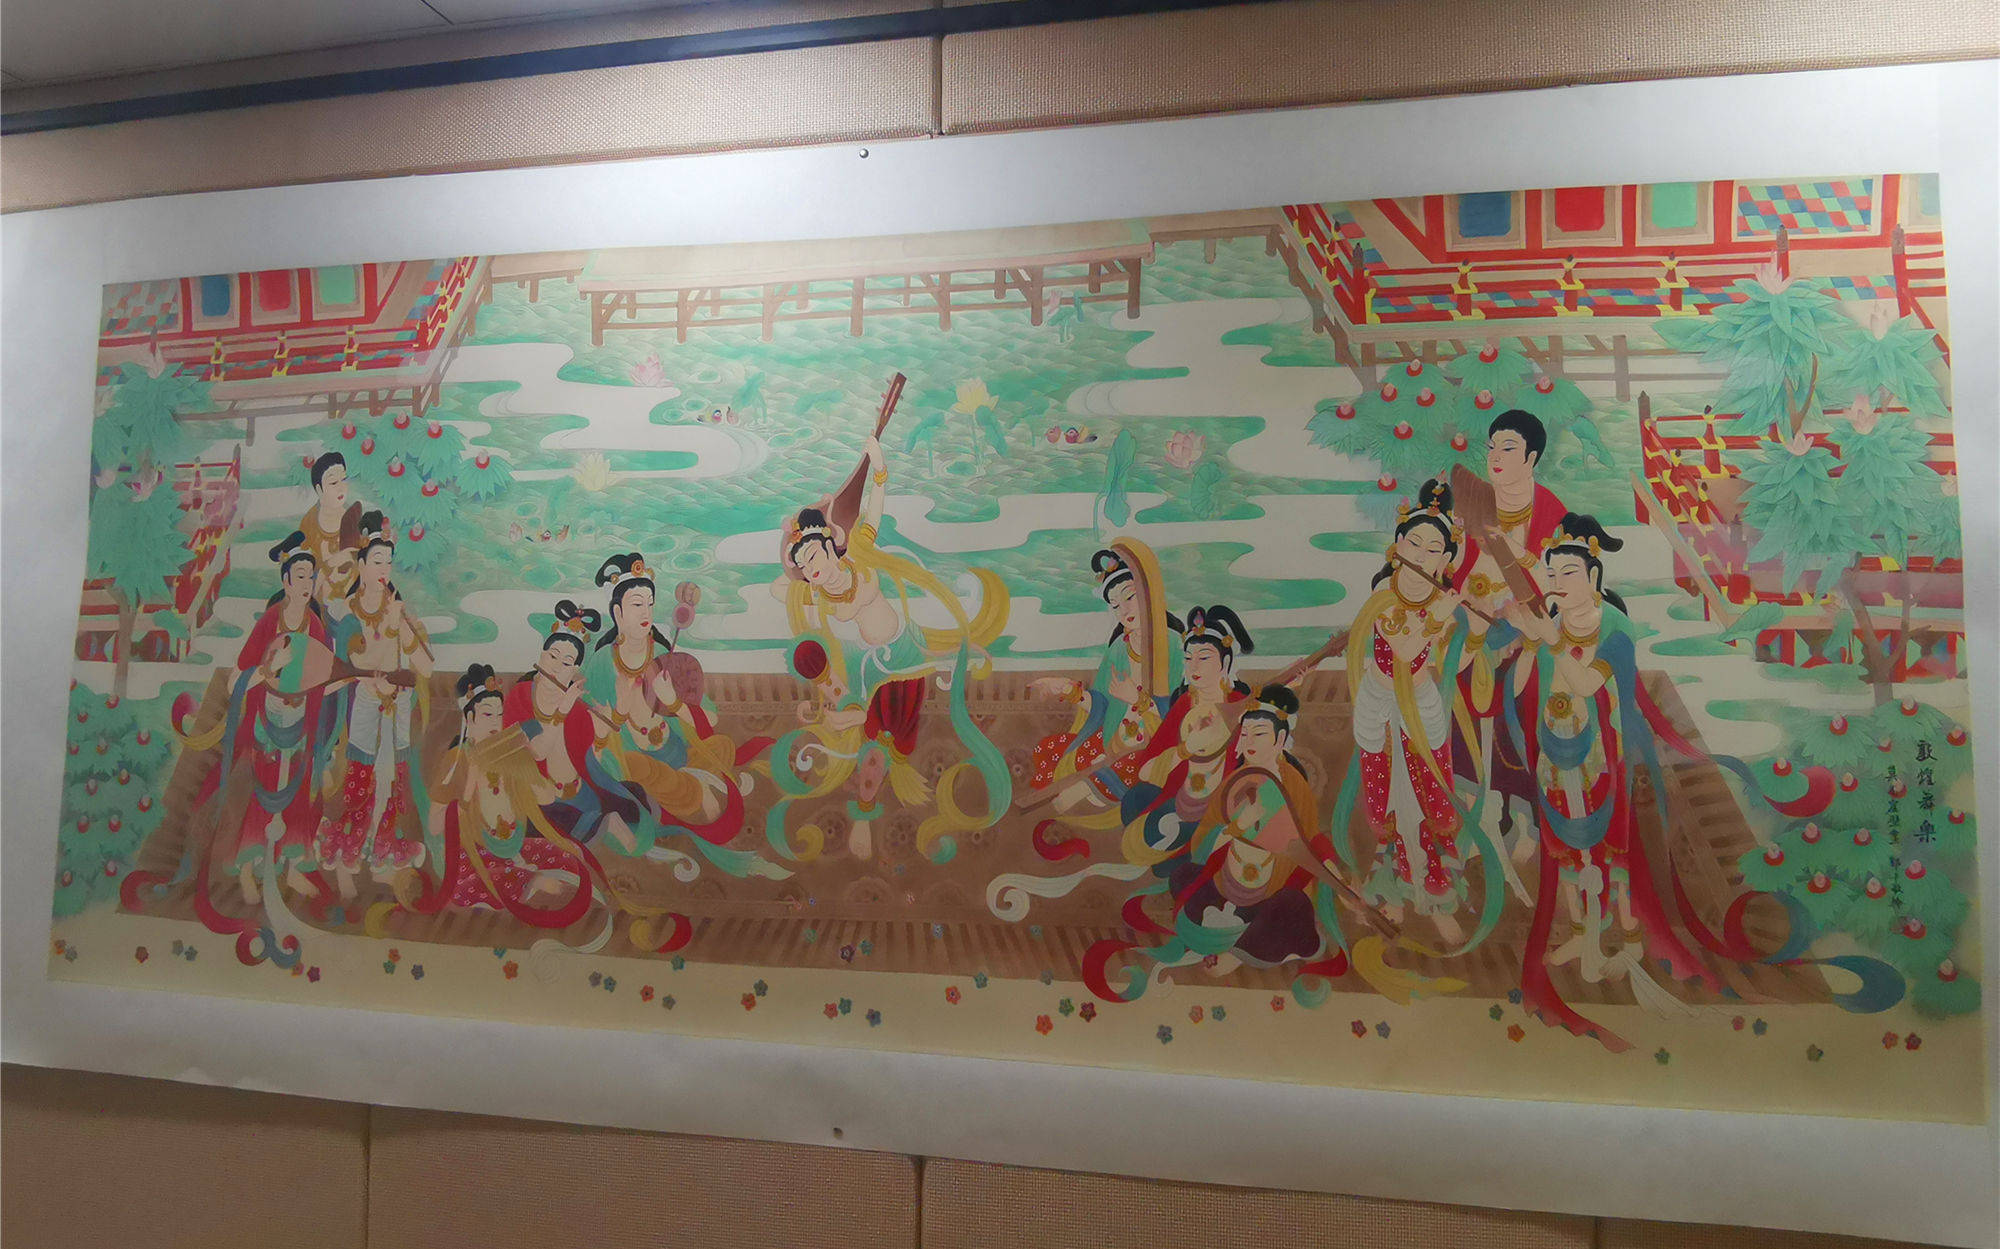 名家名作丨敦煌壁画临摹大家郭平9幅臻品于甘肃文源馆